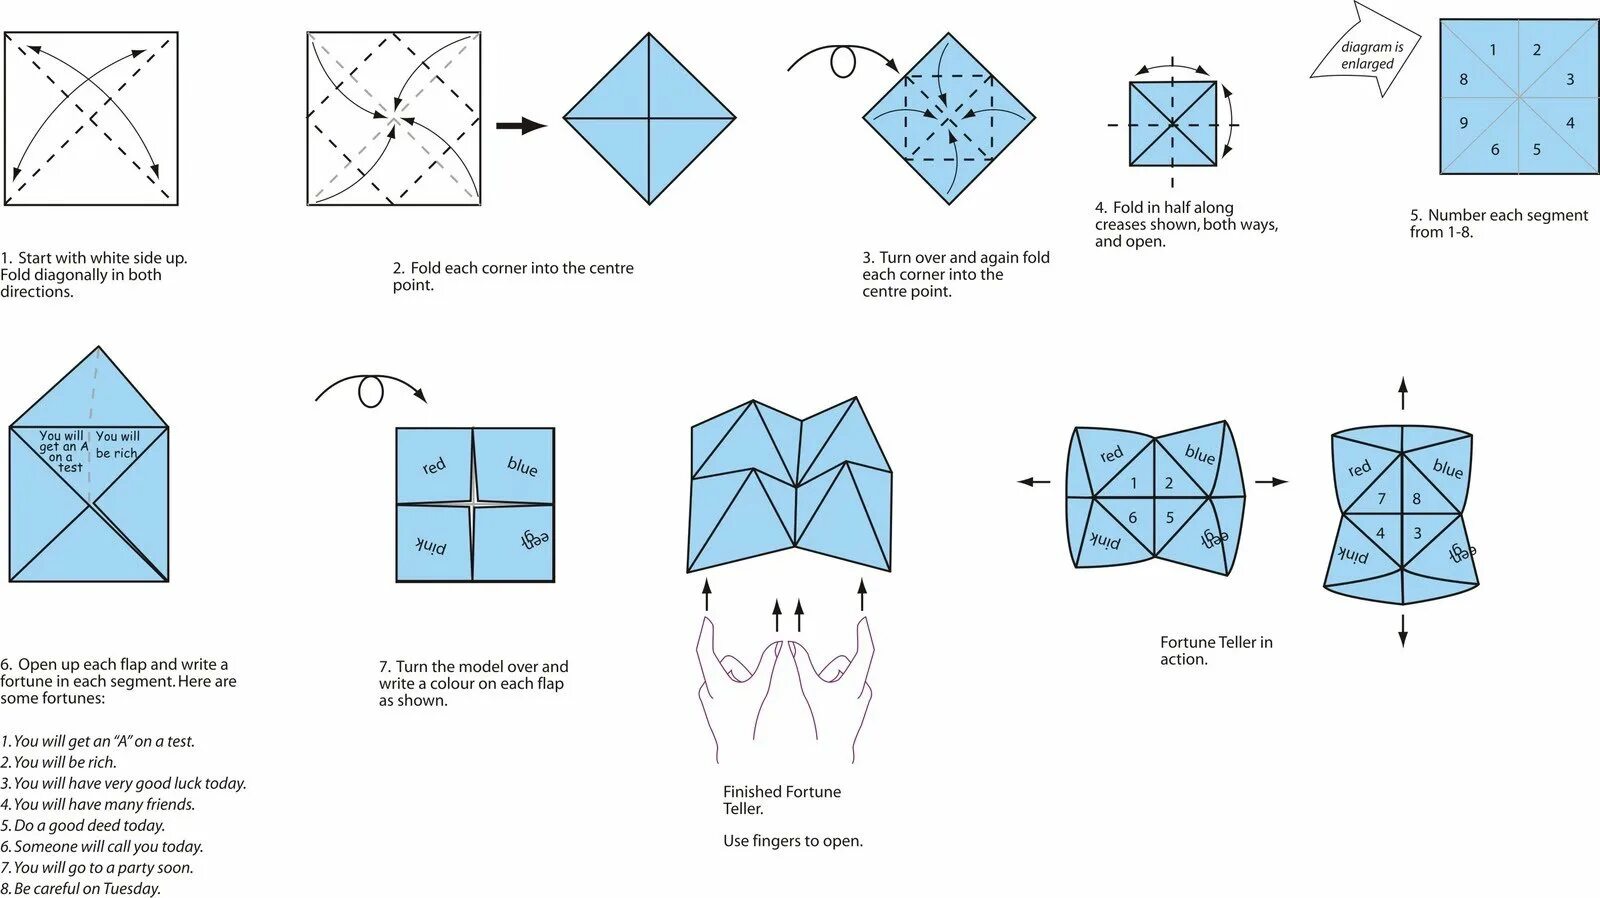 Инструкция как сделать из бумаги. Как делать гадалку из бумаги поэтапно. Гадалка оригами из бумаги для детей схема. Как сложить гадалку из бумаги пошагово. Оригами из бумаги гадалка схема как делать.